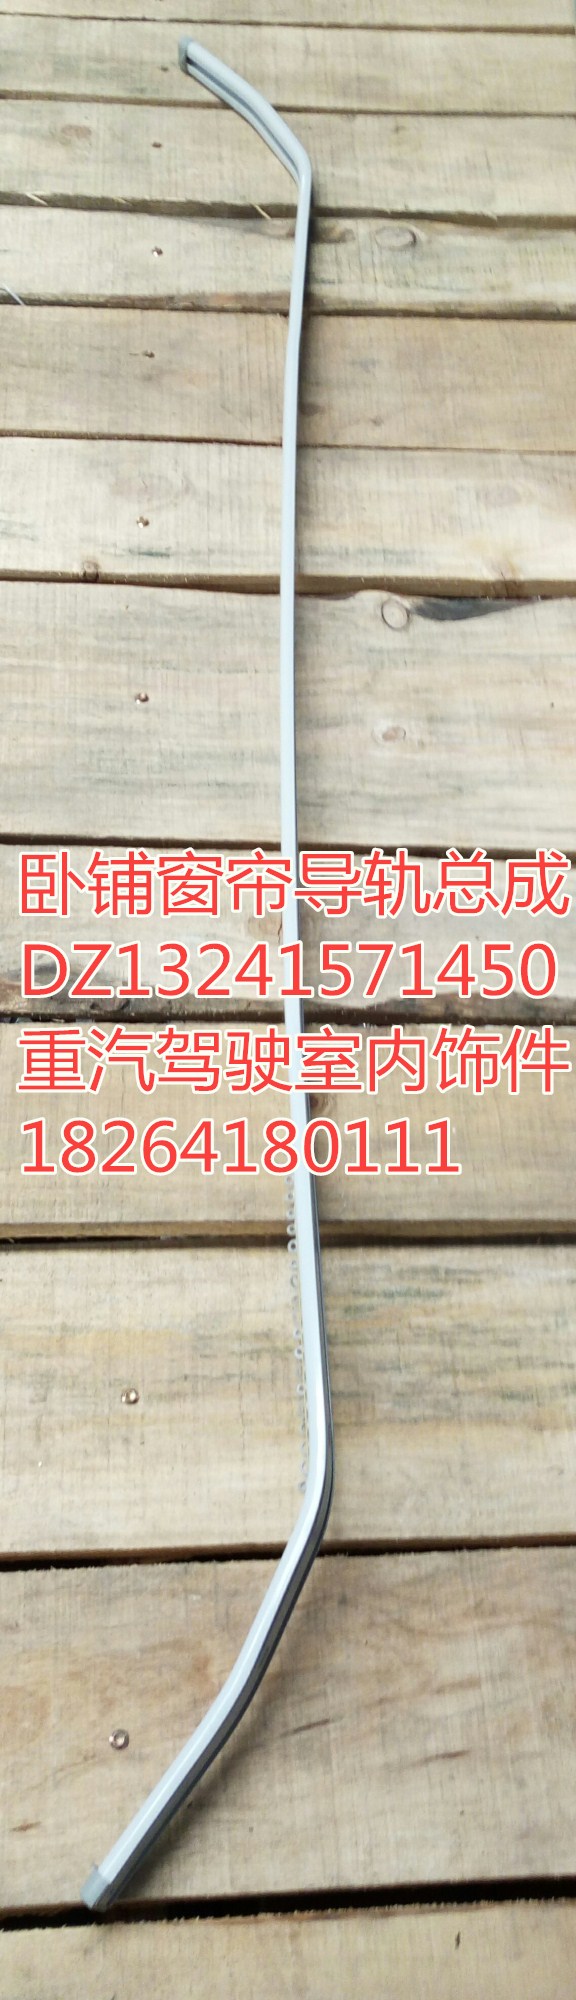 DZ13241571450,卧铺窗帘导轨总成,济南百思特驾驶室车身焊接厂